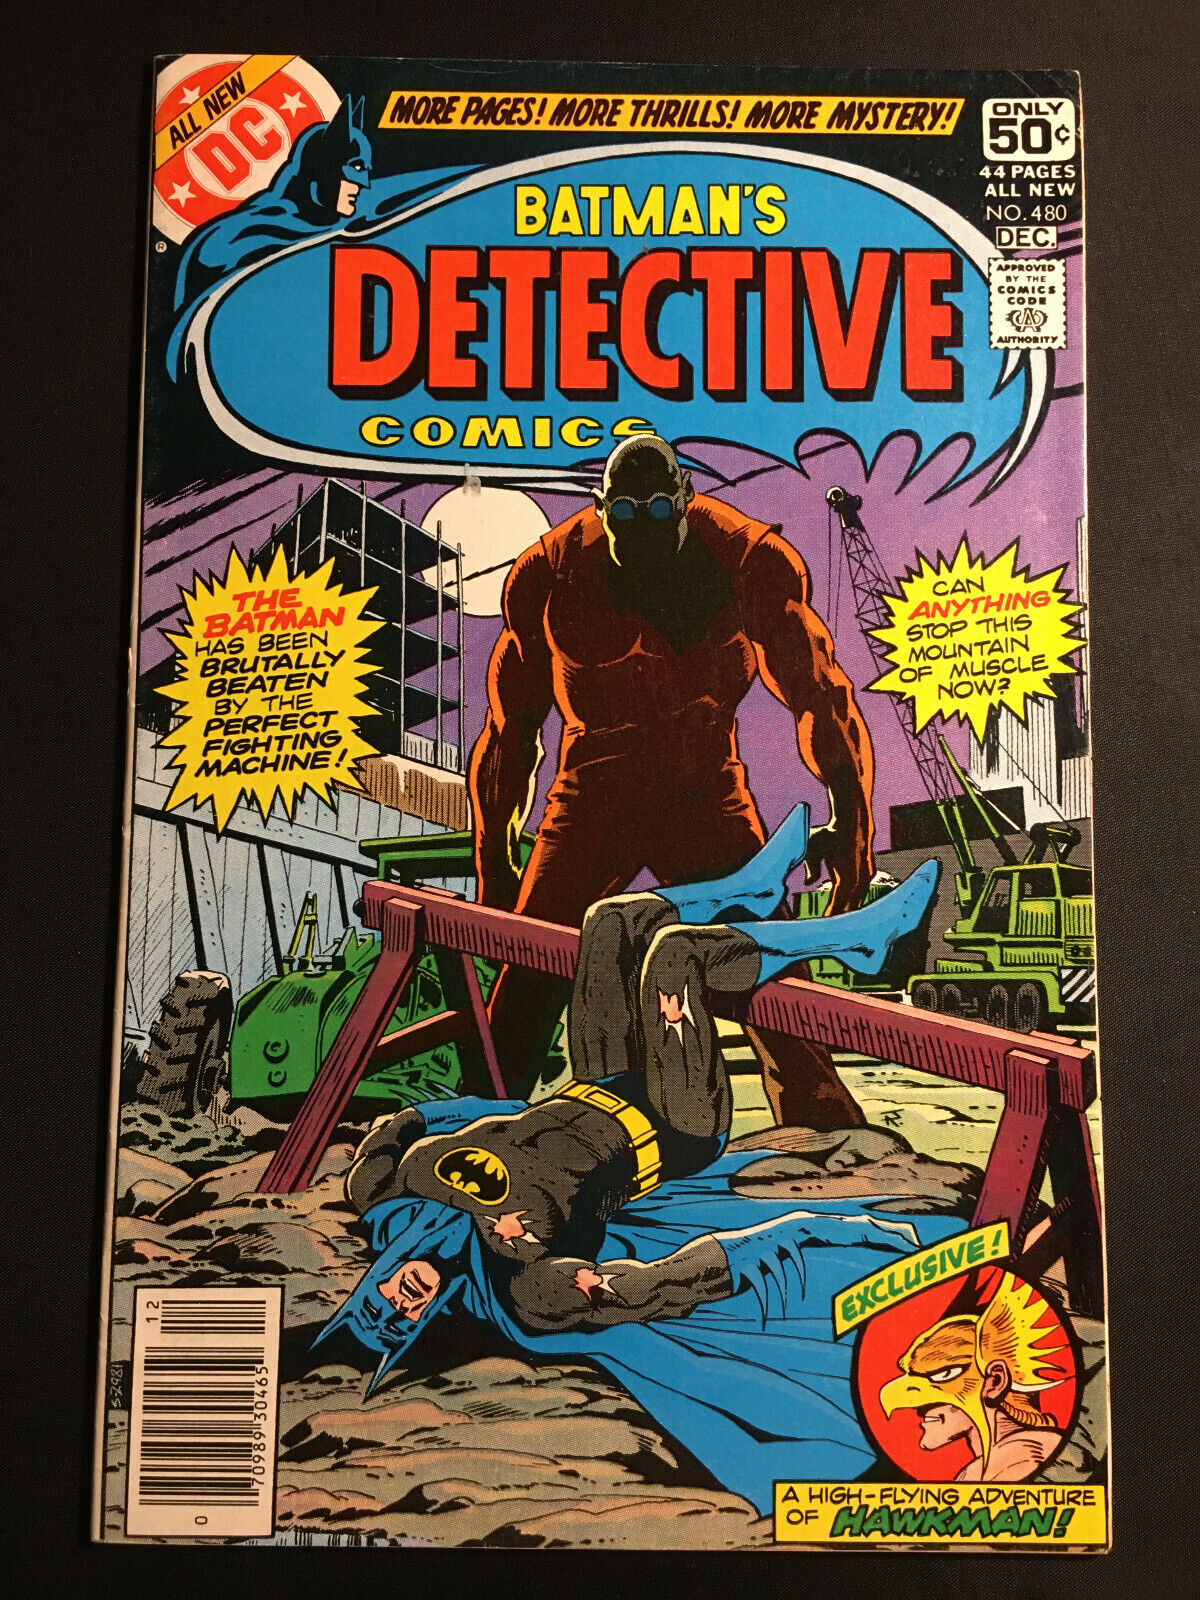 DETECTIVE COMICS 480 HAWKMAN 1978 BATMAN DAVID HUNT PIED PIPER DC COMICS V 1